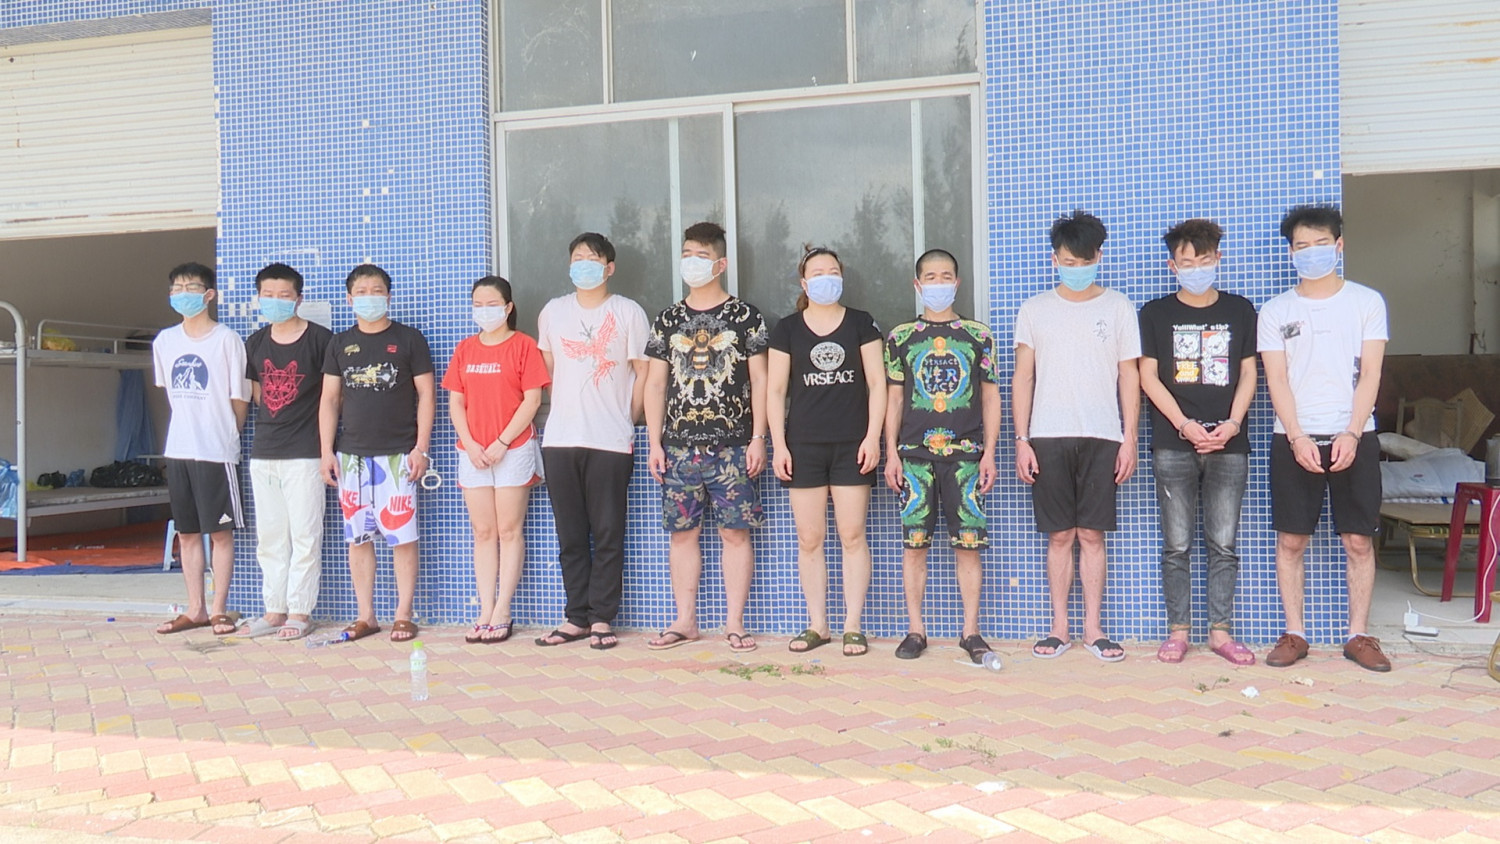 Nhóm người Trung Quốc đang bị truy nã trốn vào Việt Nam thuê nhà đánh bạc